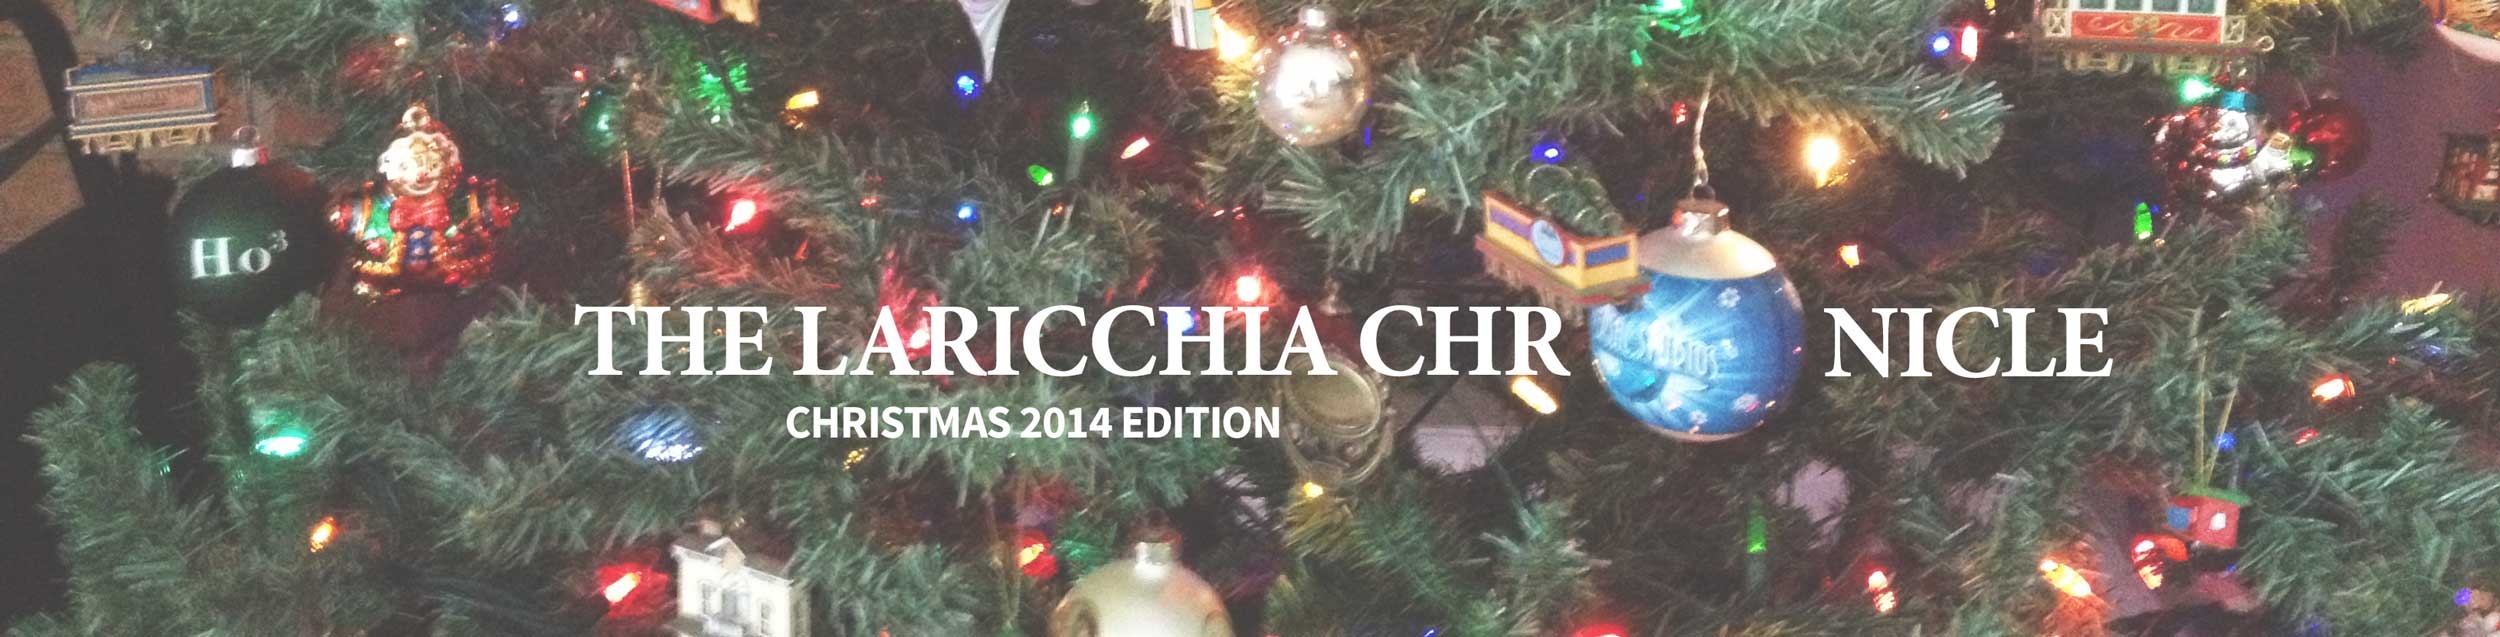 christmas-newsletter-header-2014